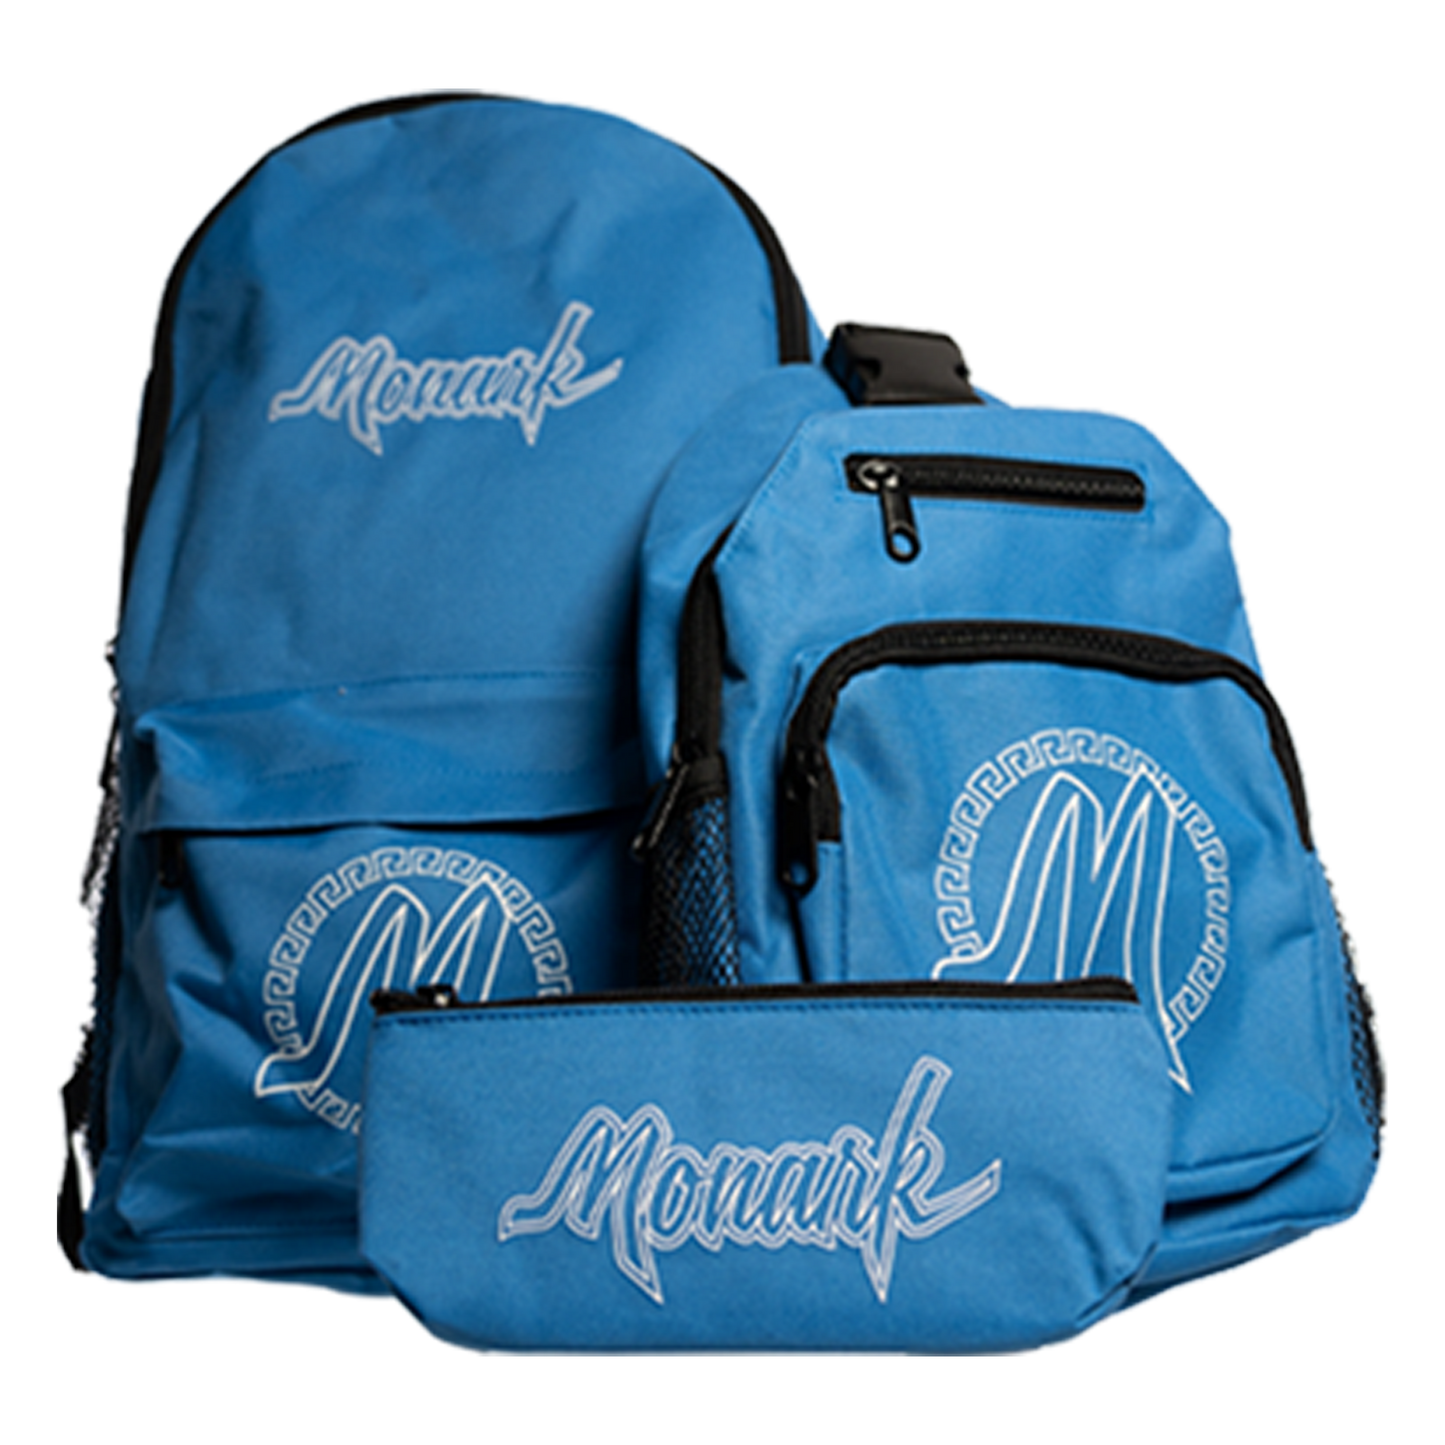 Blue Monark Backpack w/ Blue Shoulder Bag & Blue Pouch